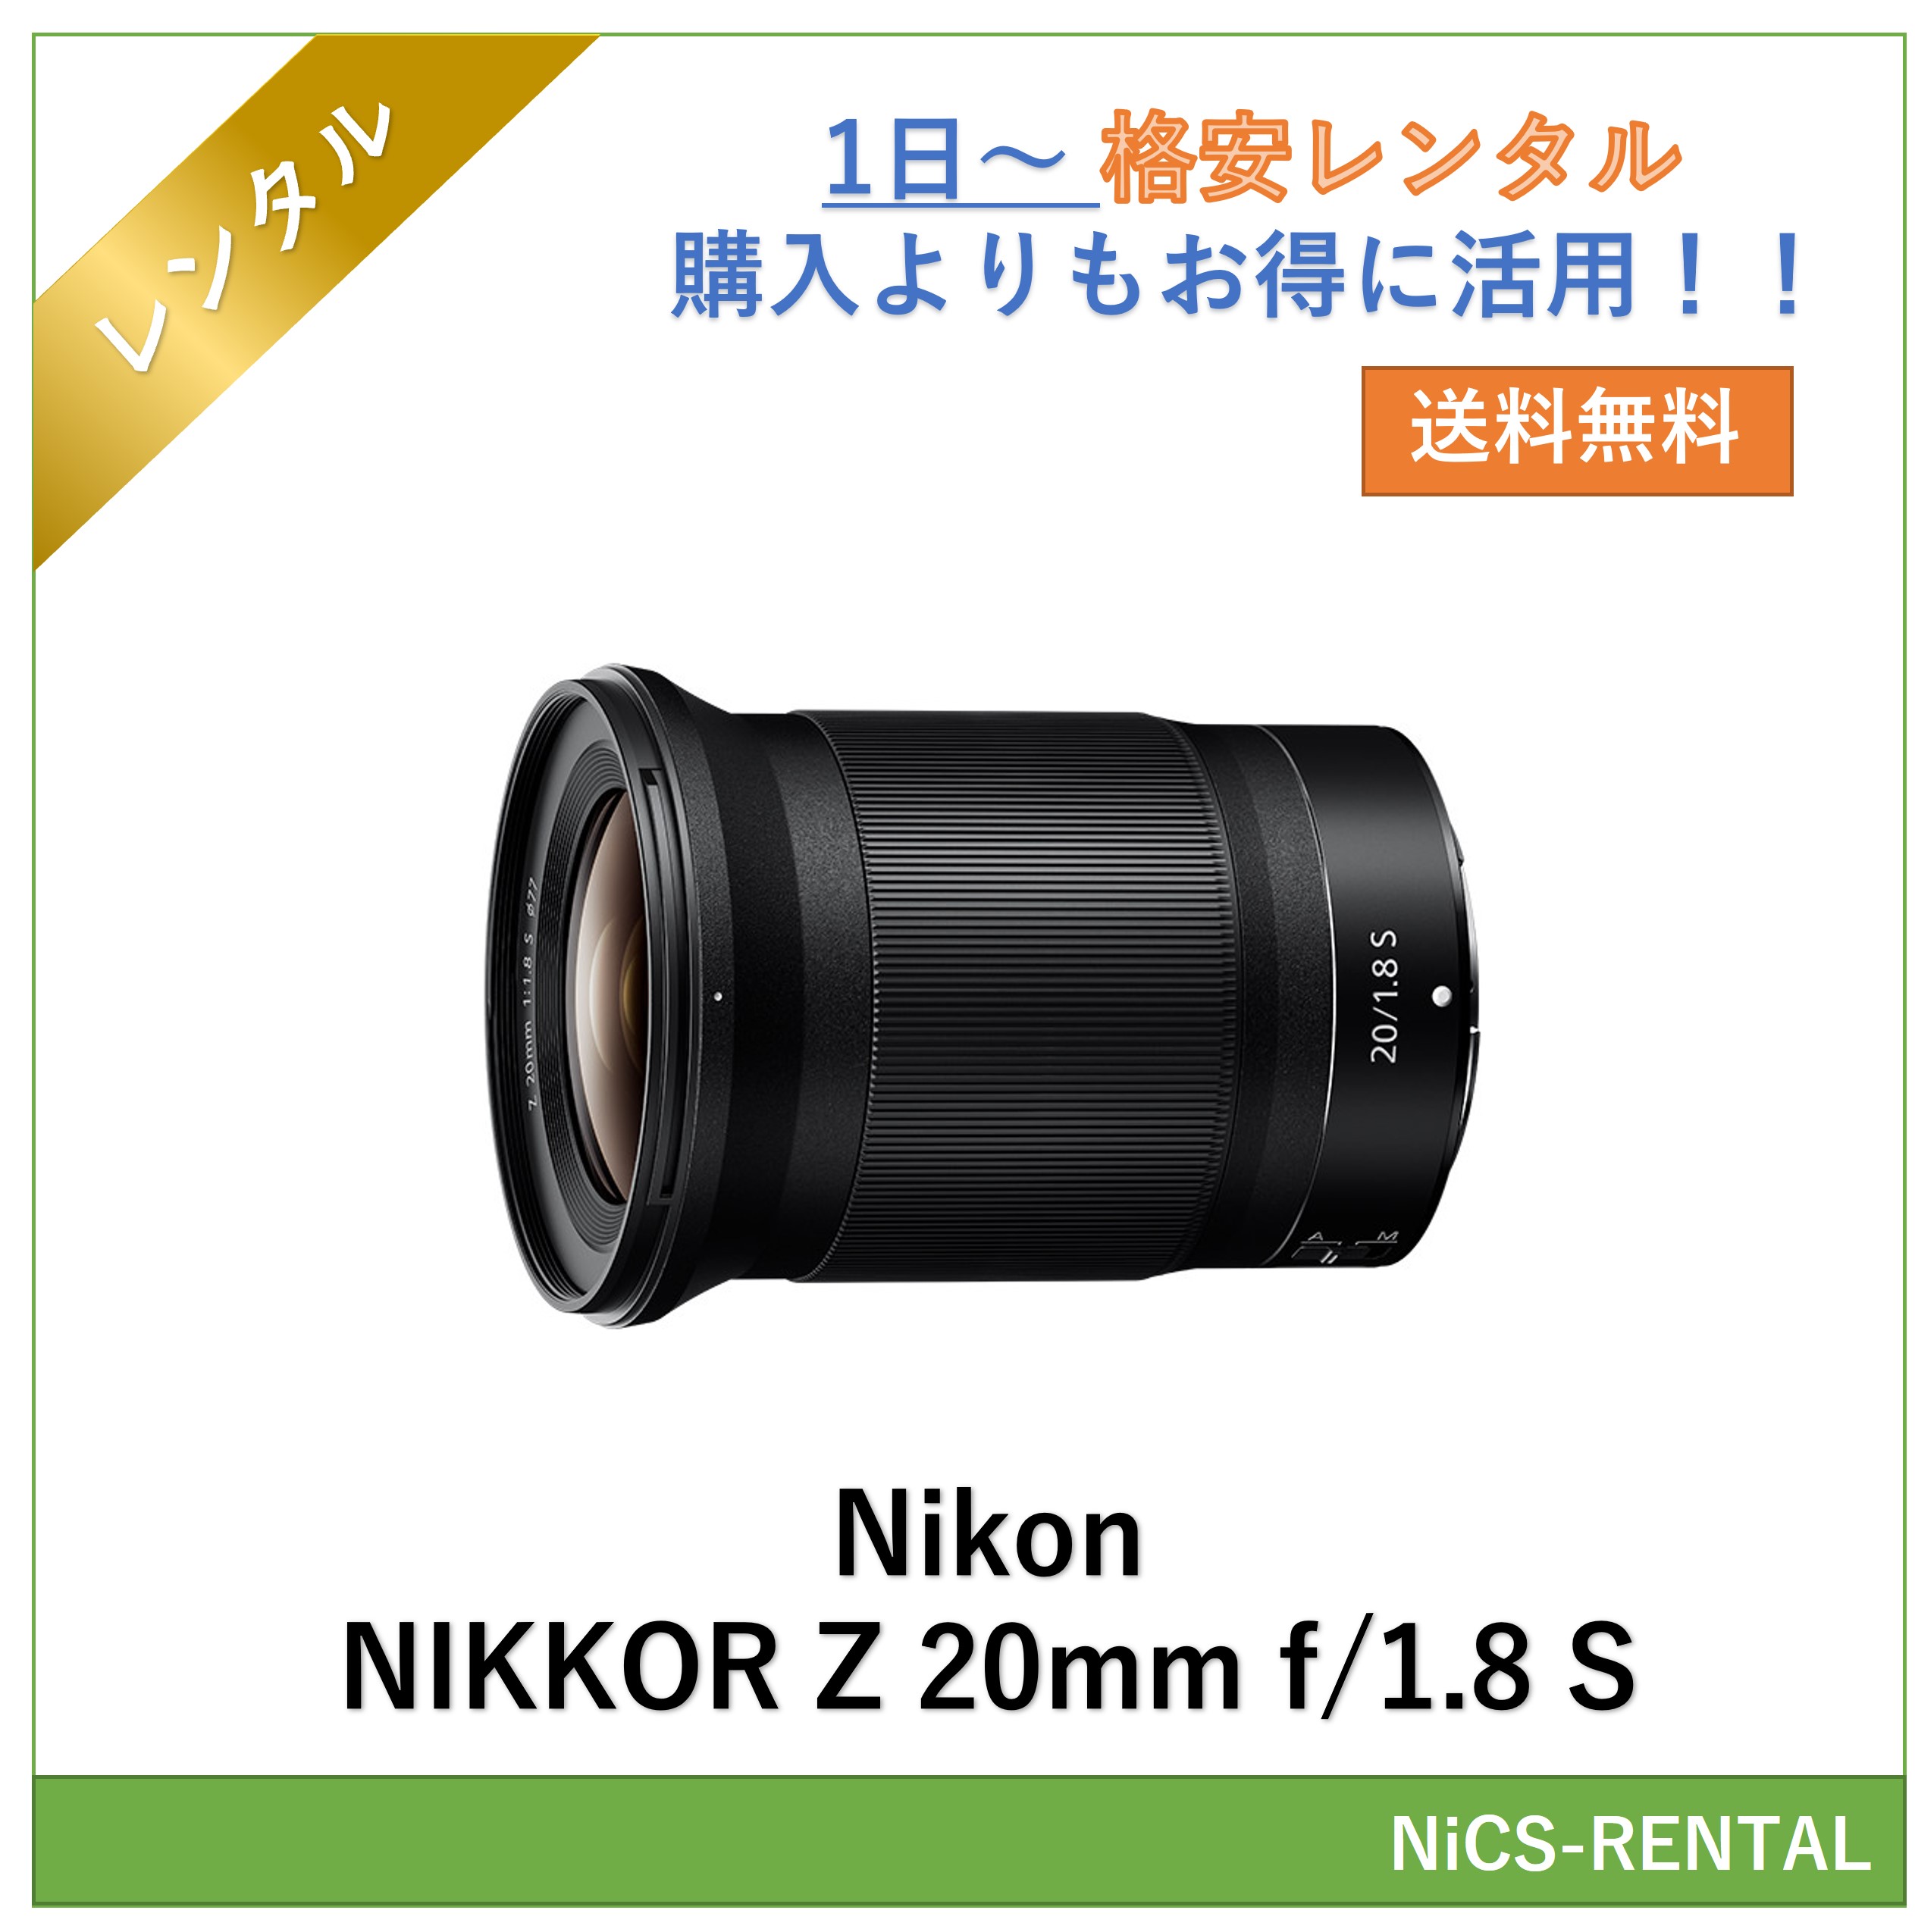 NIKKOR Z 20mm f/1.8 S Nikon линзы беззеркальный однообъективный камера 1 день ~ в аренду бесплатная доставка 